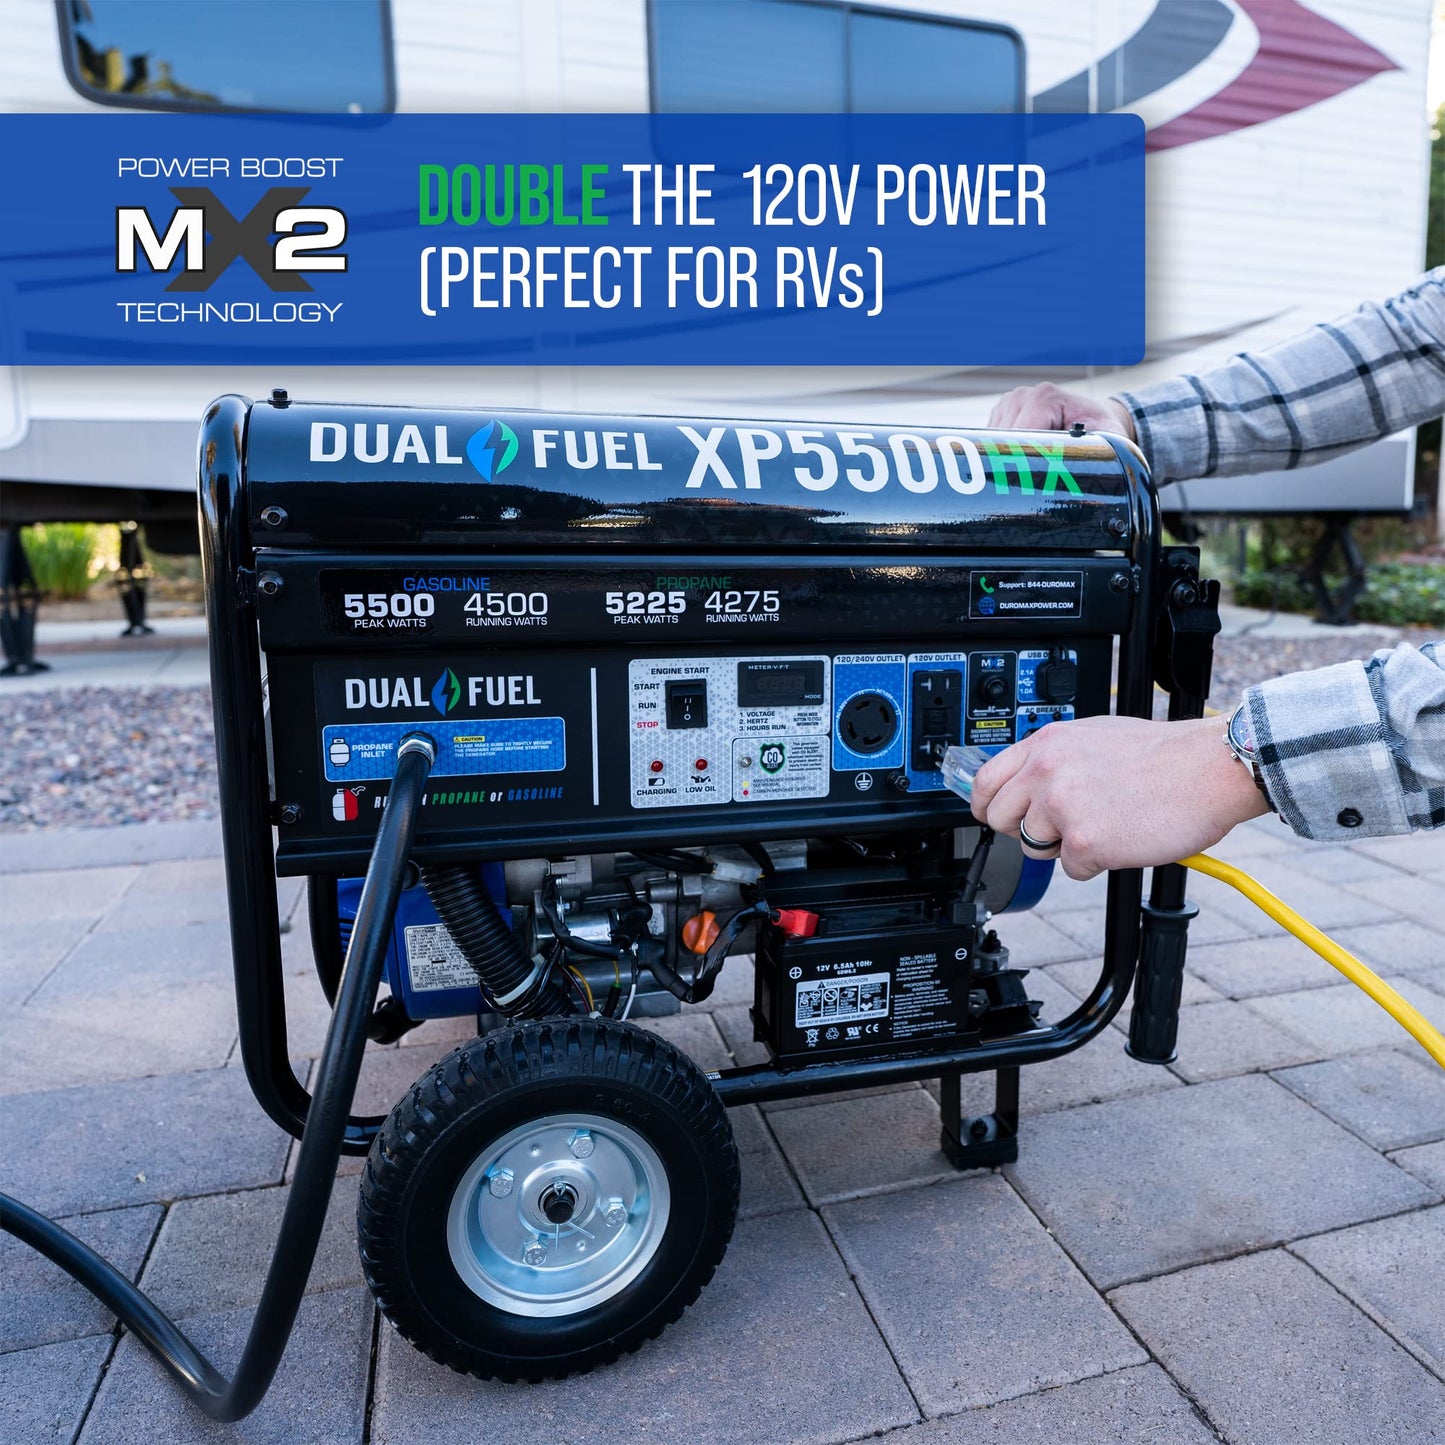 DuroMax XP5500HX Générateur portable double carburant - 5 500 W - Démarrage électrique alimenté au gaz ou au propane avec alerte CO, approuvé par 50 États - Bleu 5 500 W double carburant 